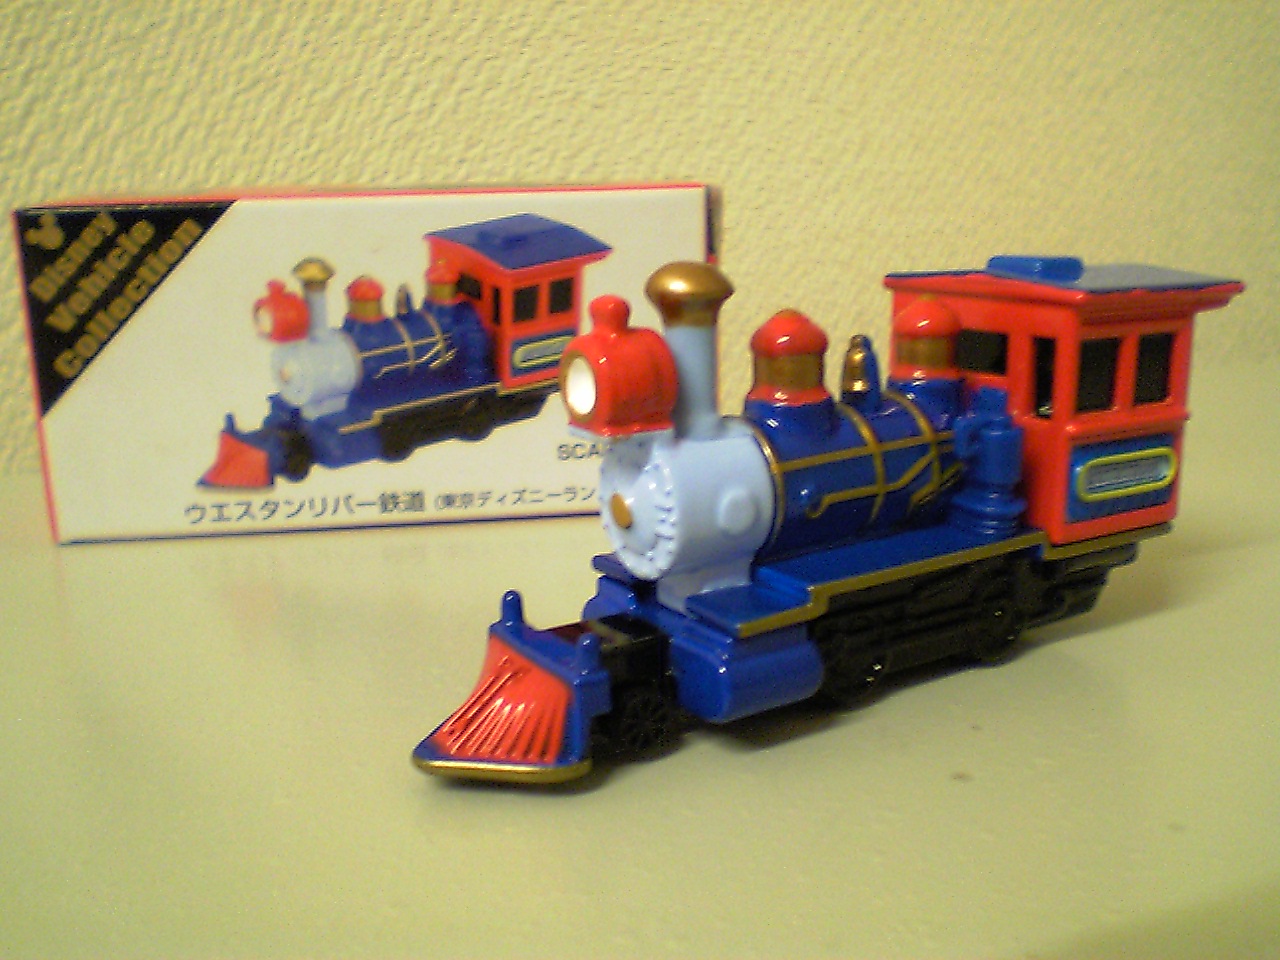 知らなんだ 本当の蒸気機関車だったんだ おもちゃ雑記帖 静岡版